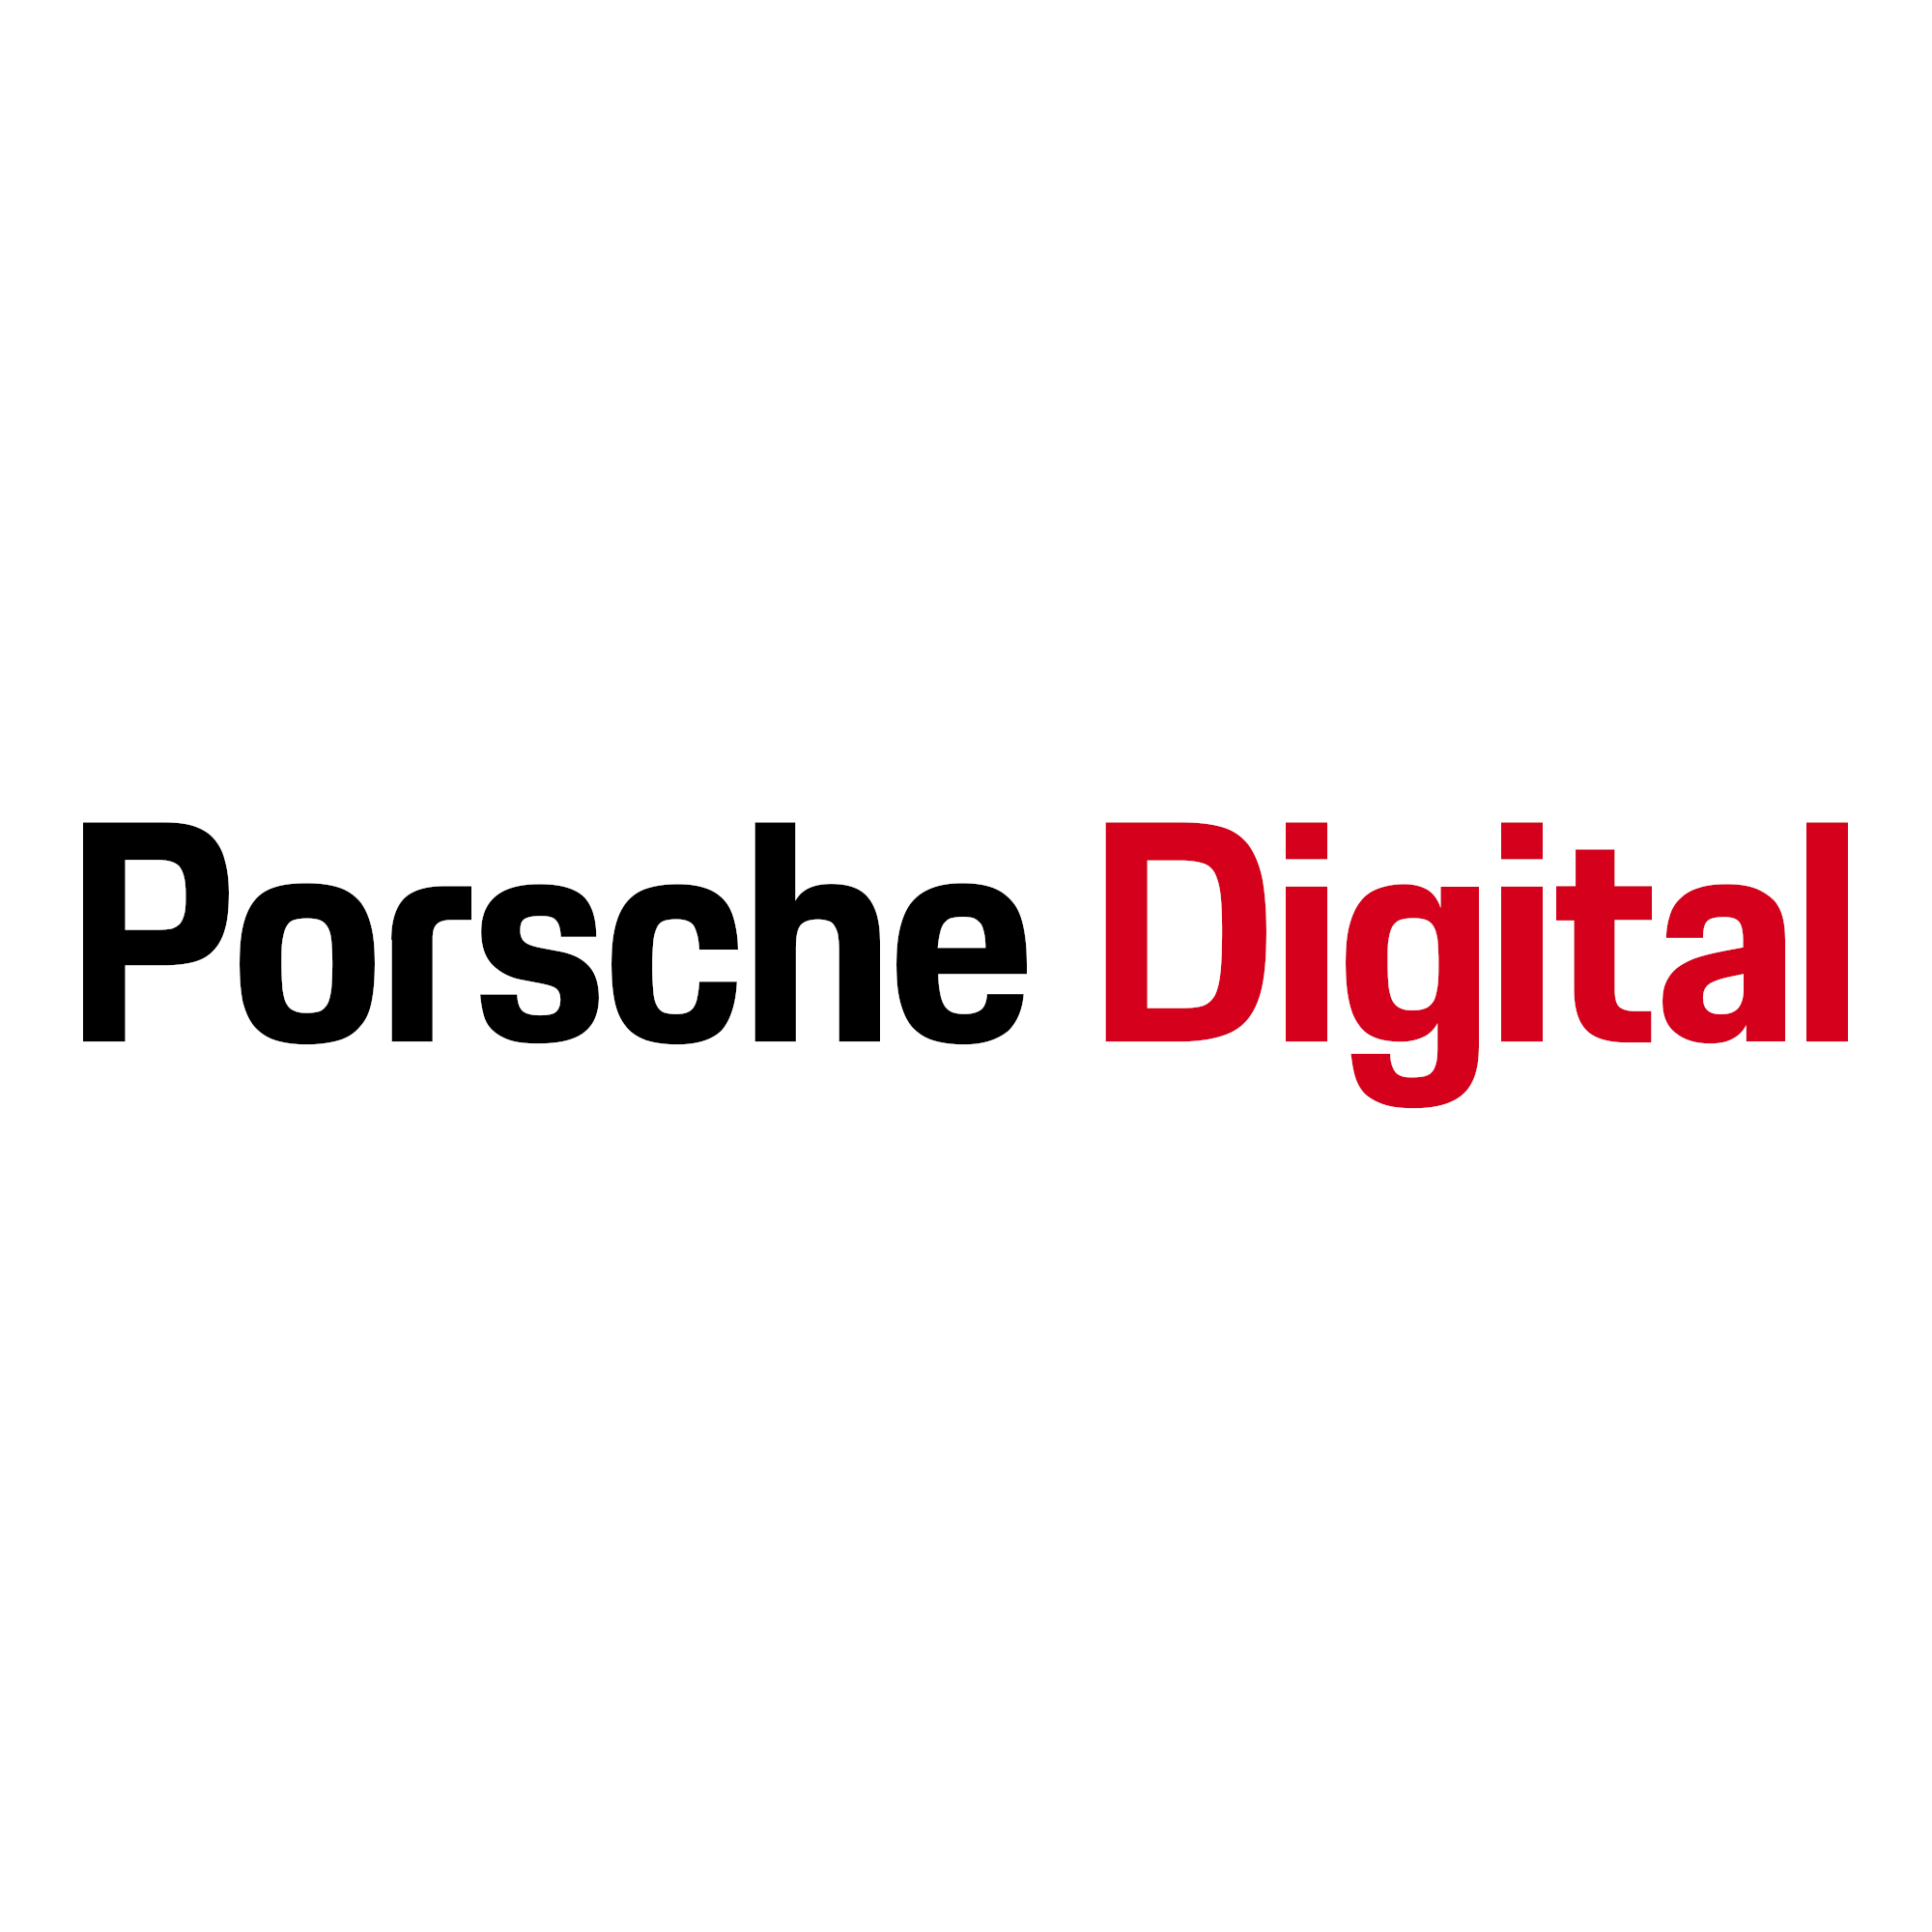 Porsche digital